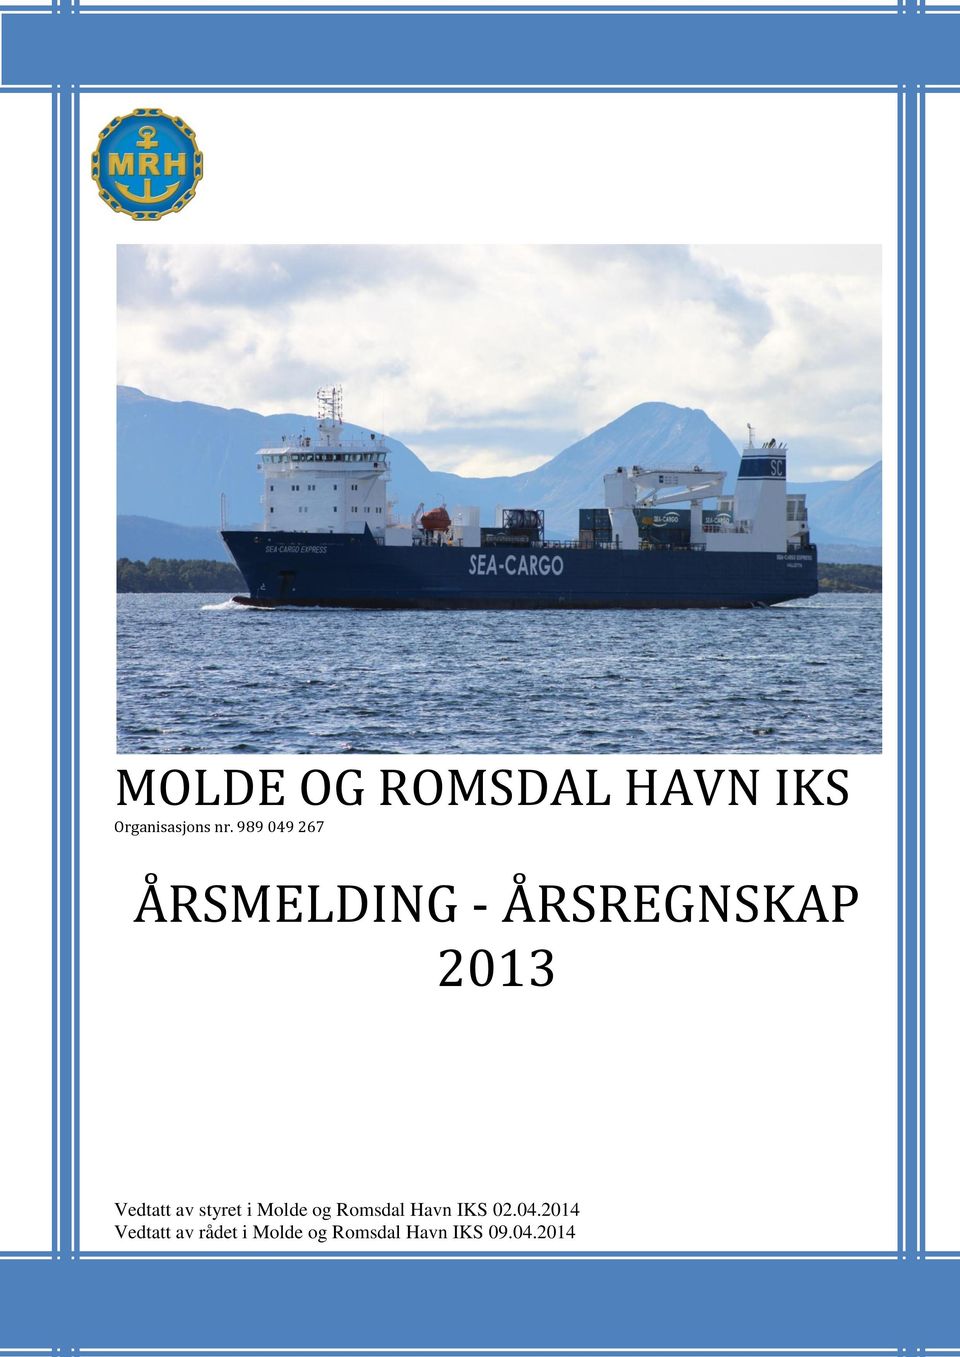 av styret i Molde og Romsdal Havn IKS 02.04.